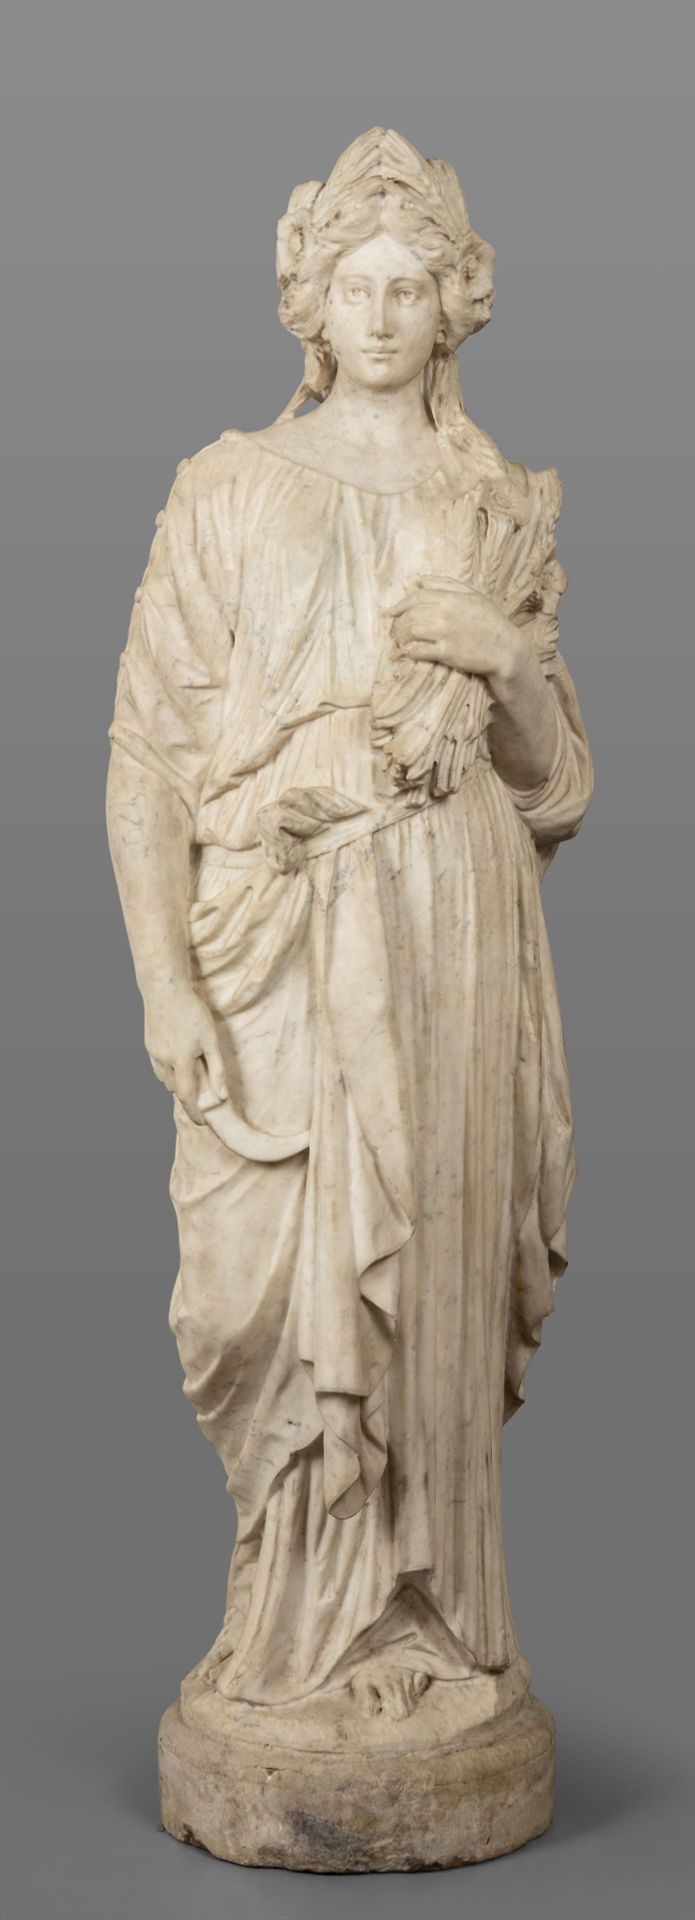 OGGETTISTICA Estatuaria de verano escultura de mármol siglo XVIII
h.Cm.152